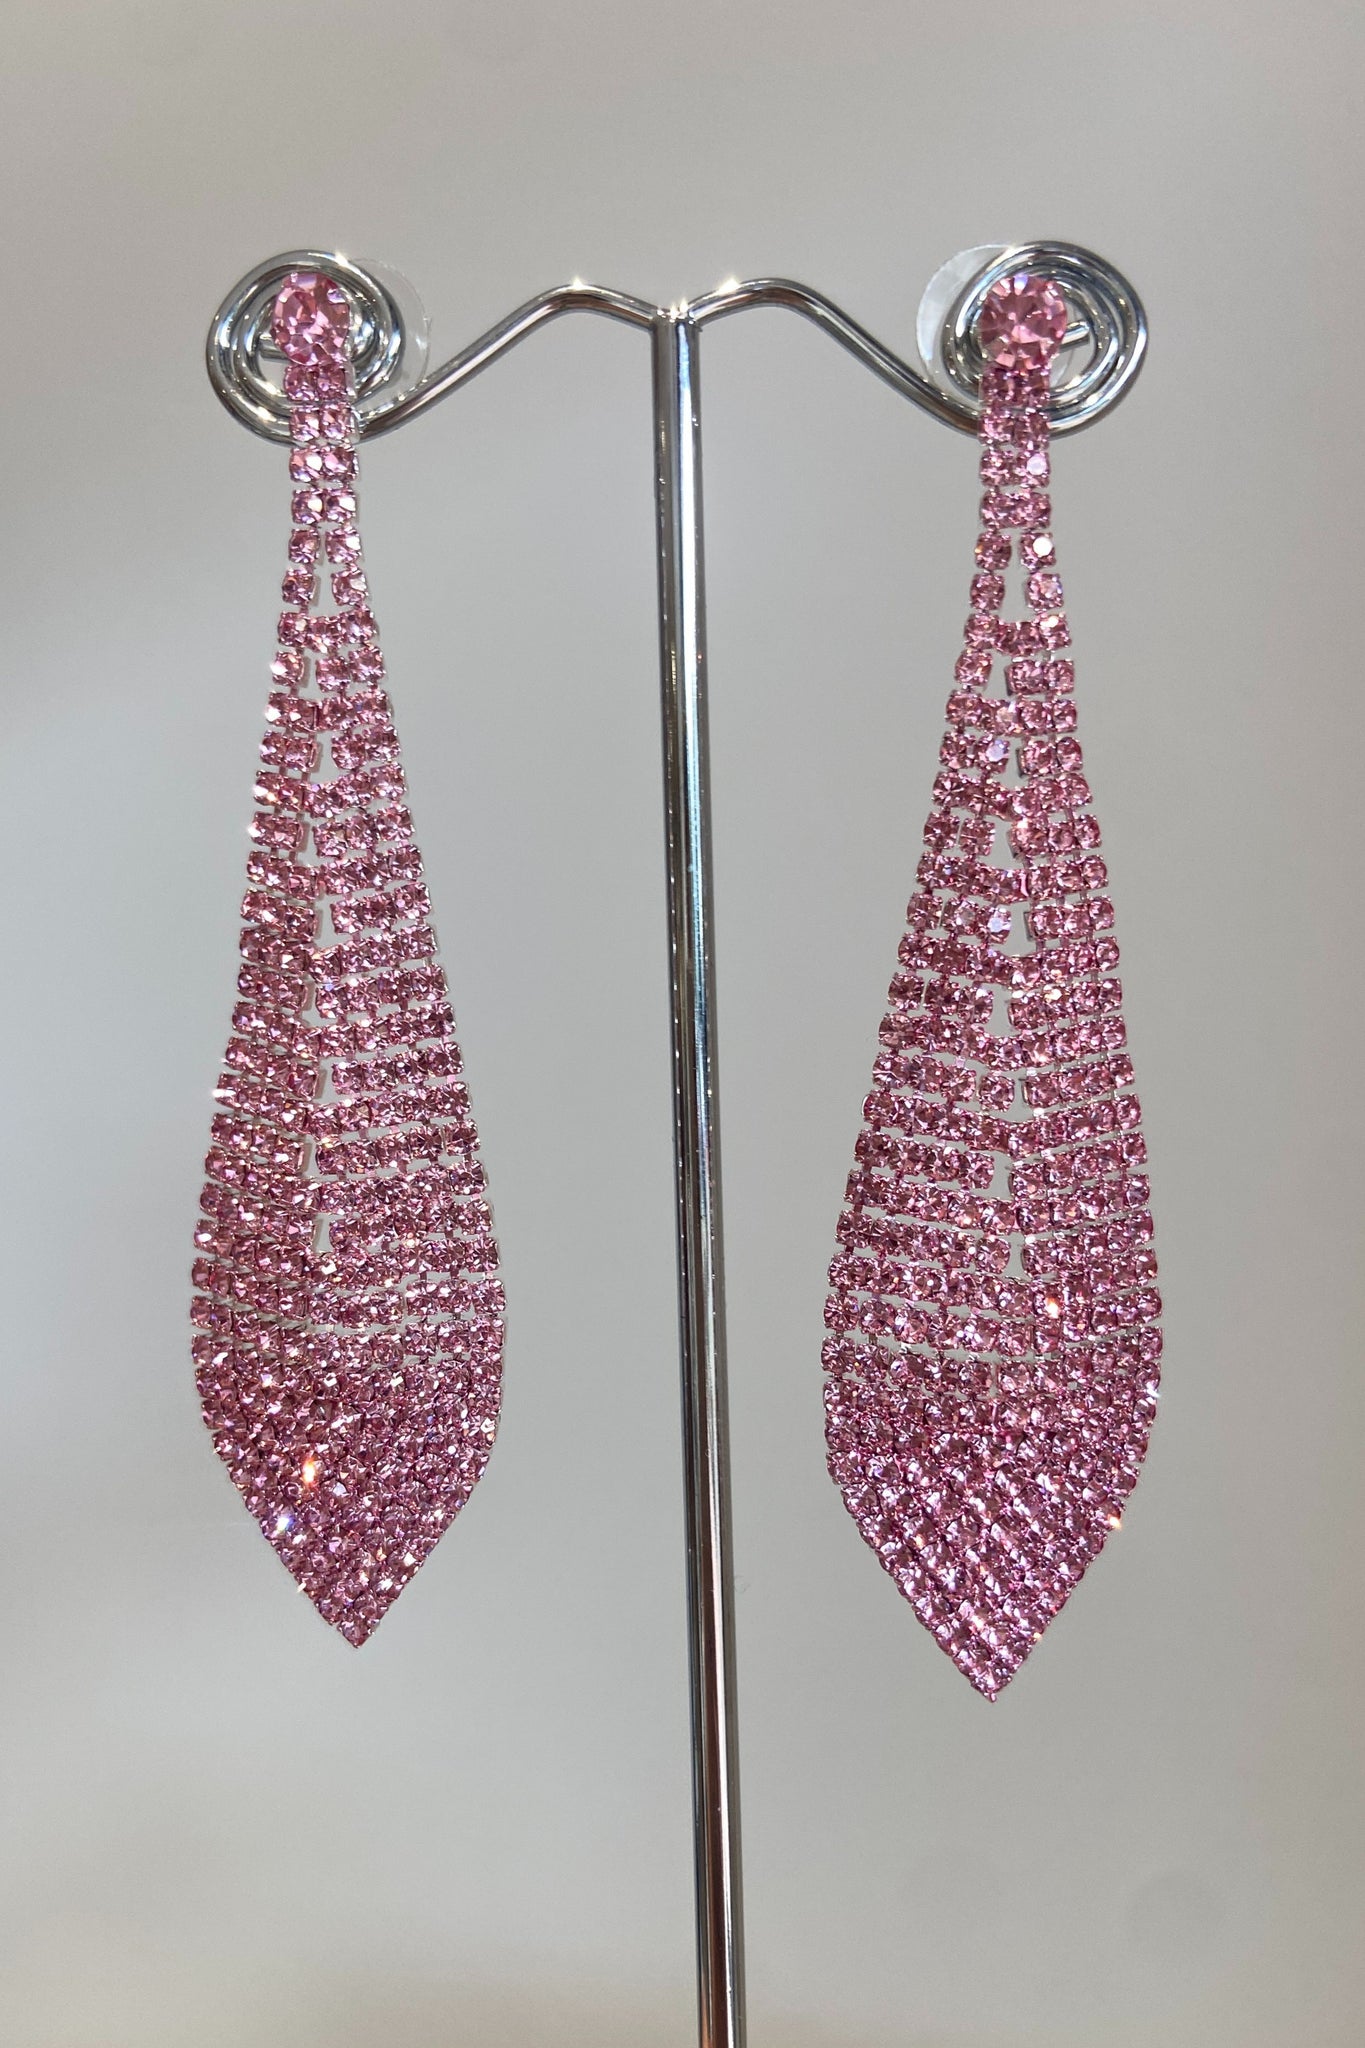 Studio Rhinestone Drop Earrings - Pink